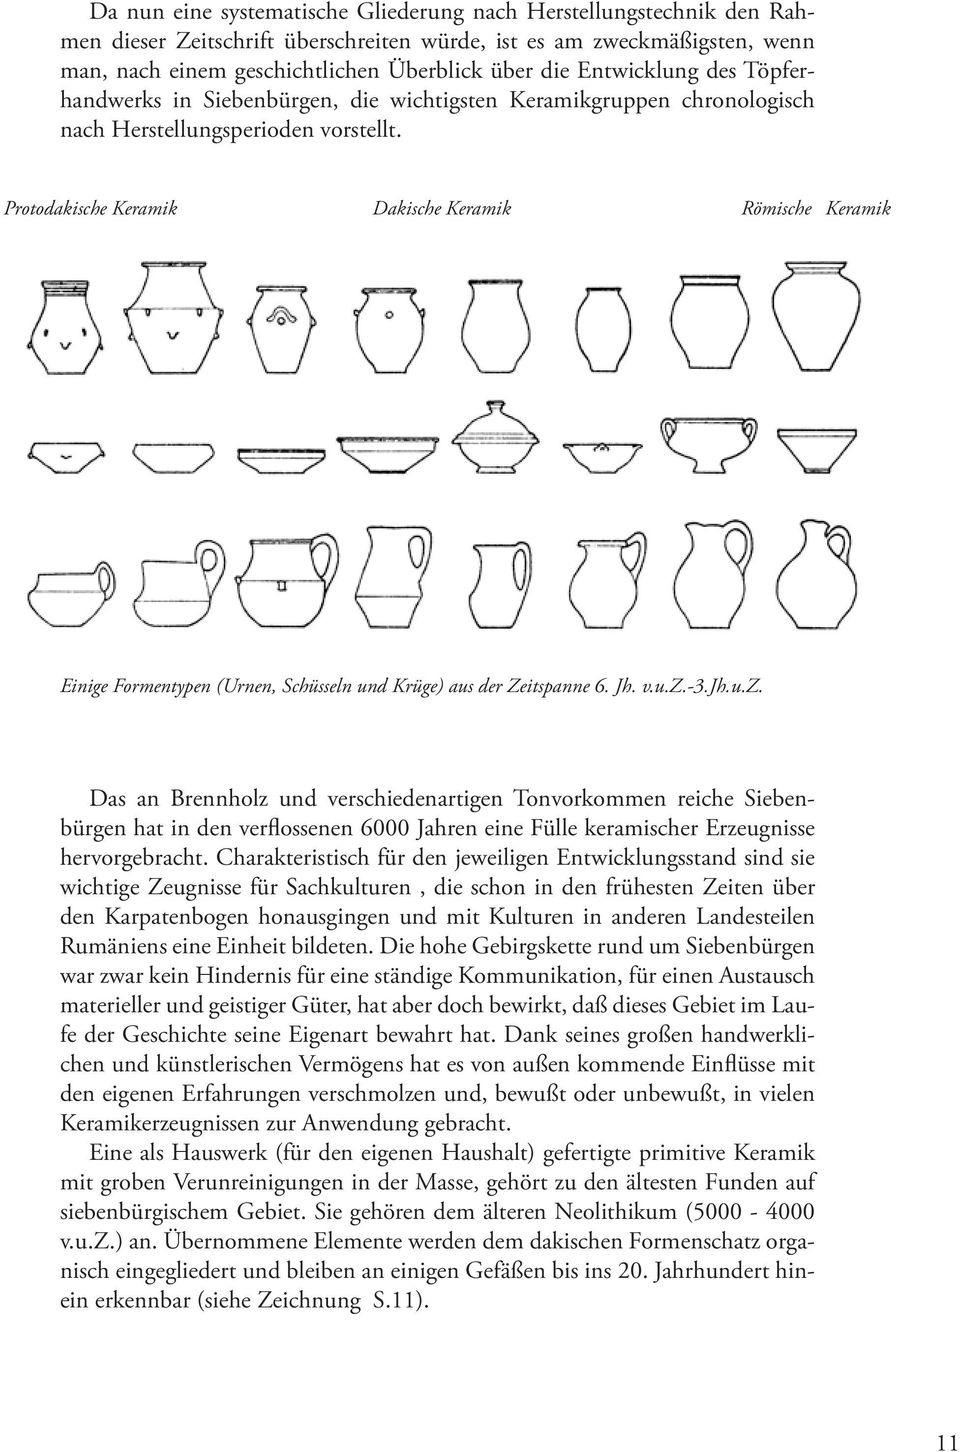 Protodakische Keramik Dakische Keramik Römische Keramik Einige Formentypen (Urnen, Schüsseln und Krüge) aus der Zeitspanne 6. Jh. v.u.z.